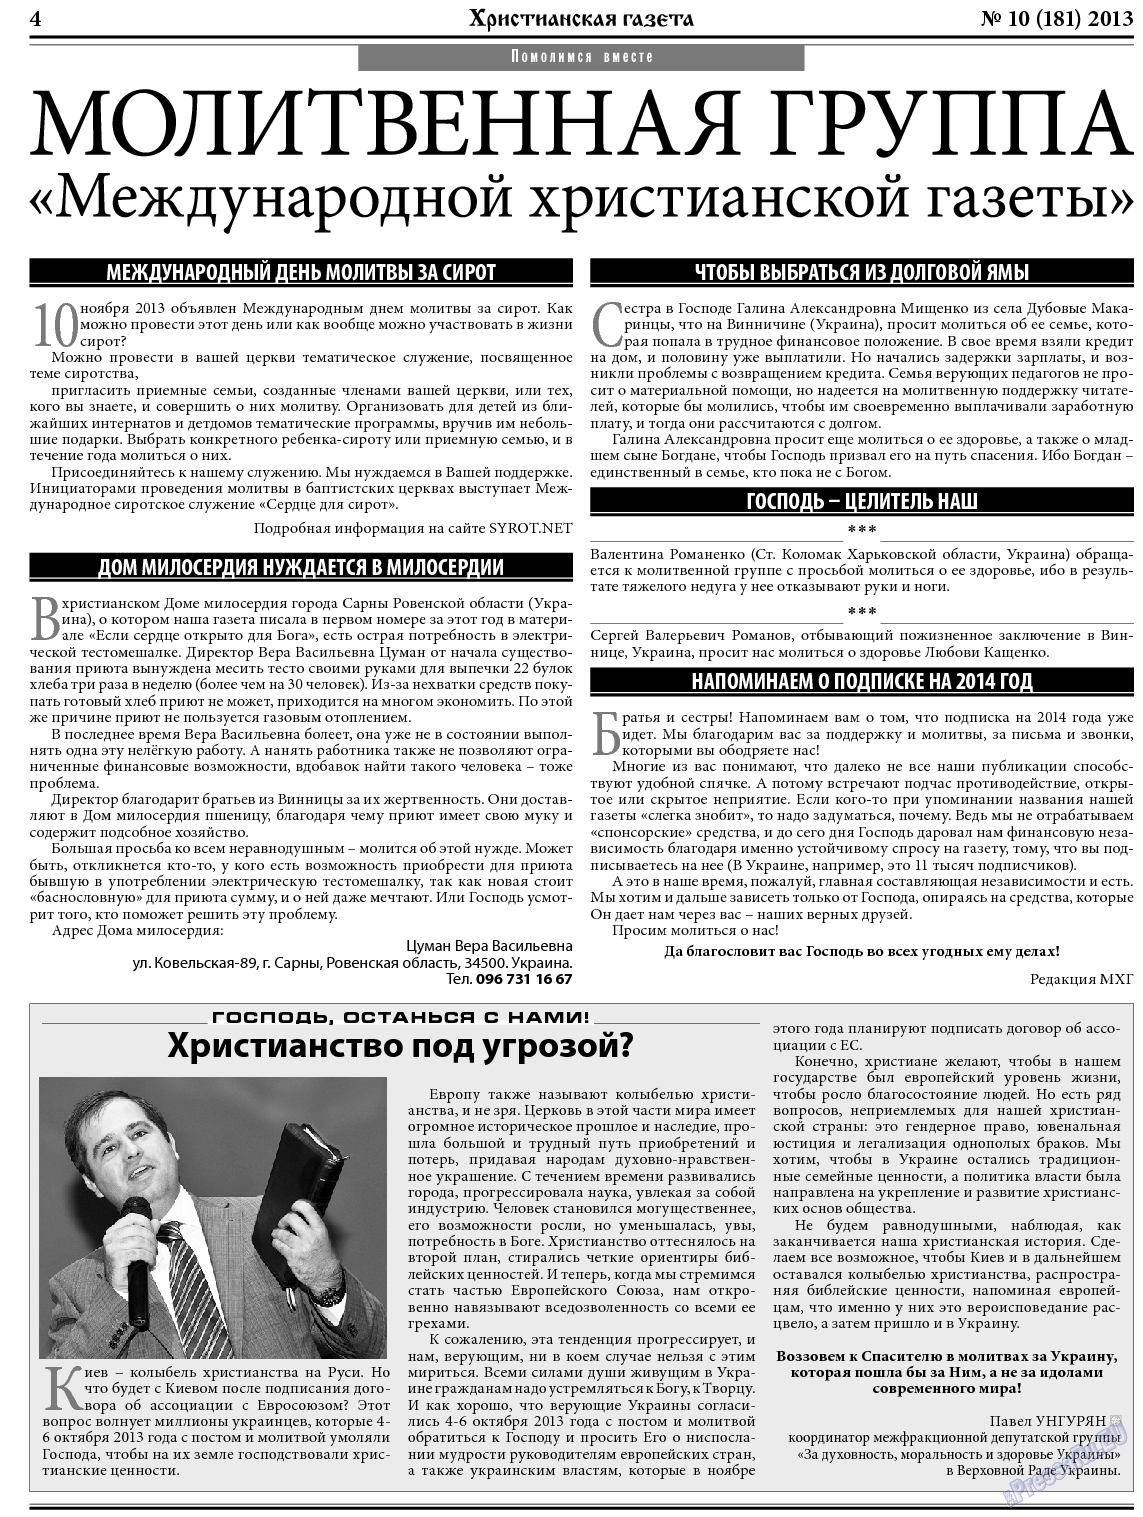 Христианская газета, газета. 2013 №10 стр.4